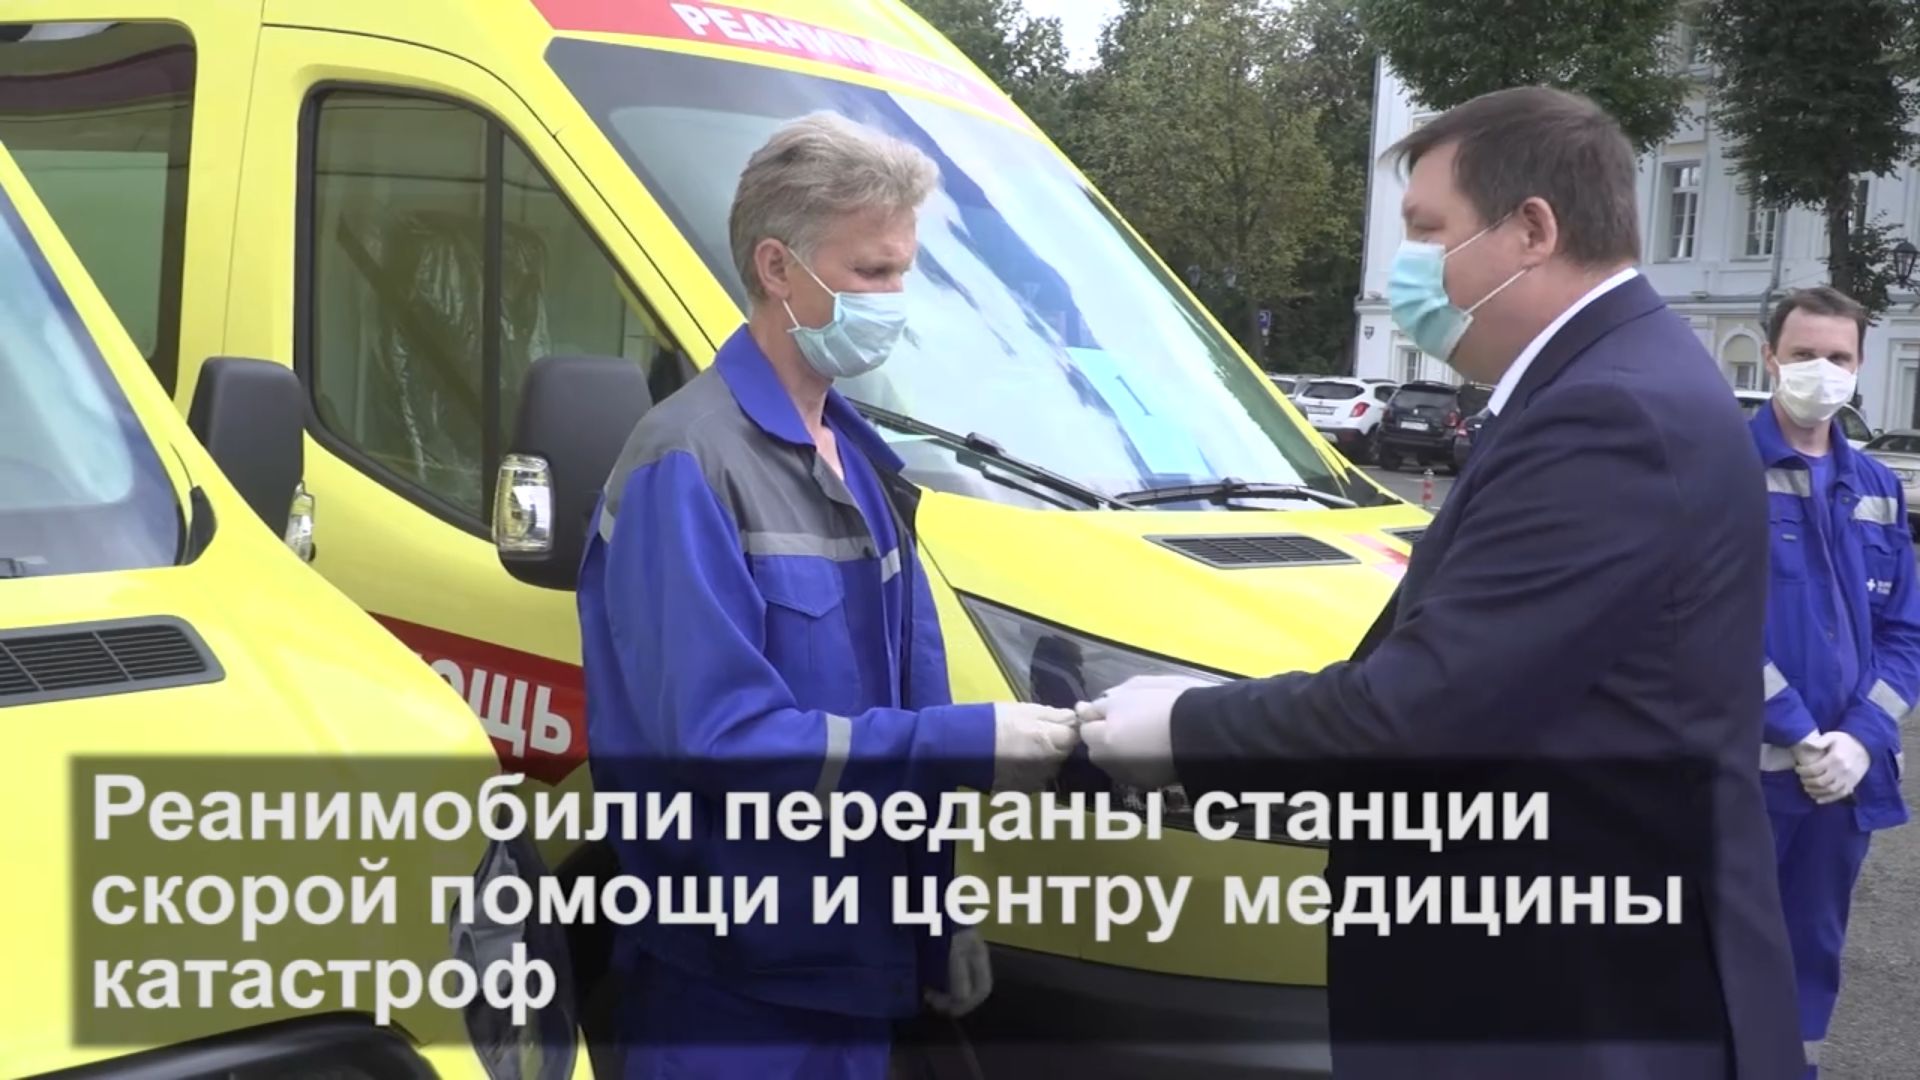 Ярославская область получила 18 автомобилей скорой помощи «С» класса